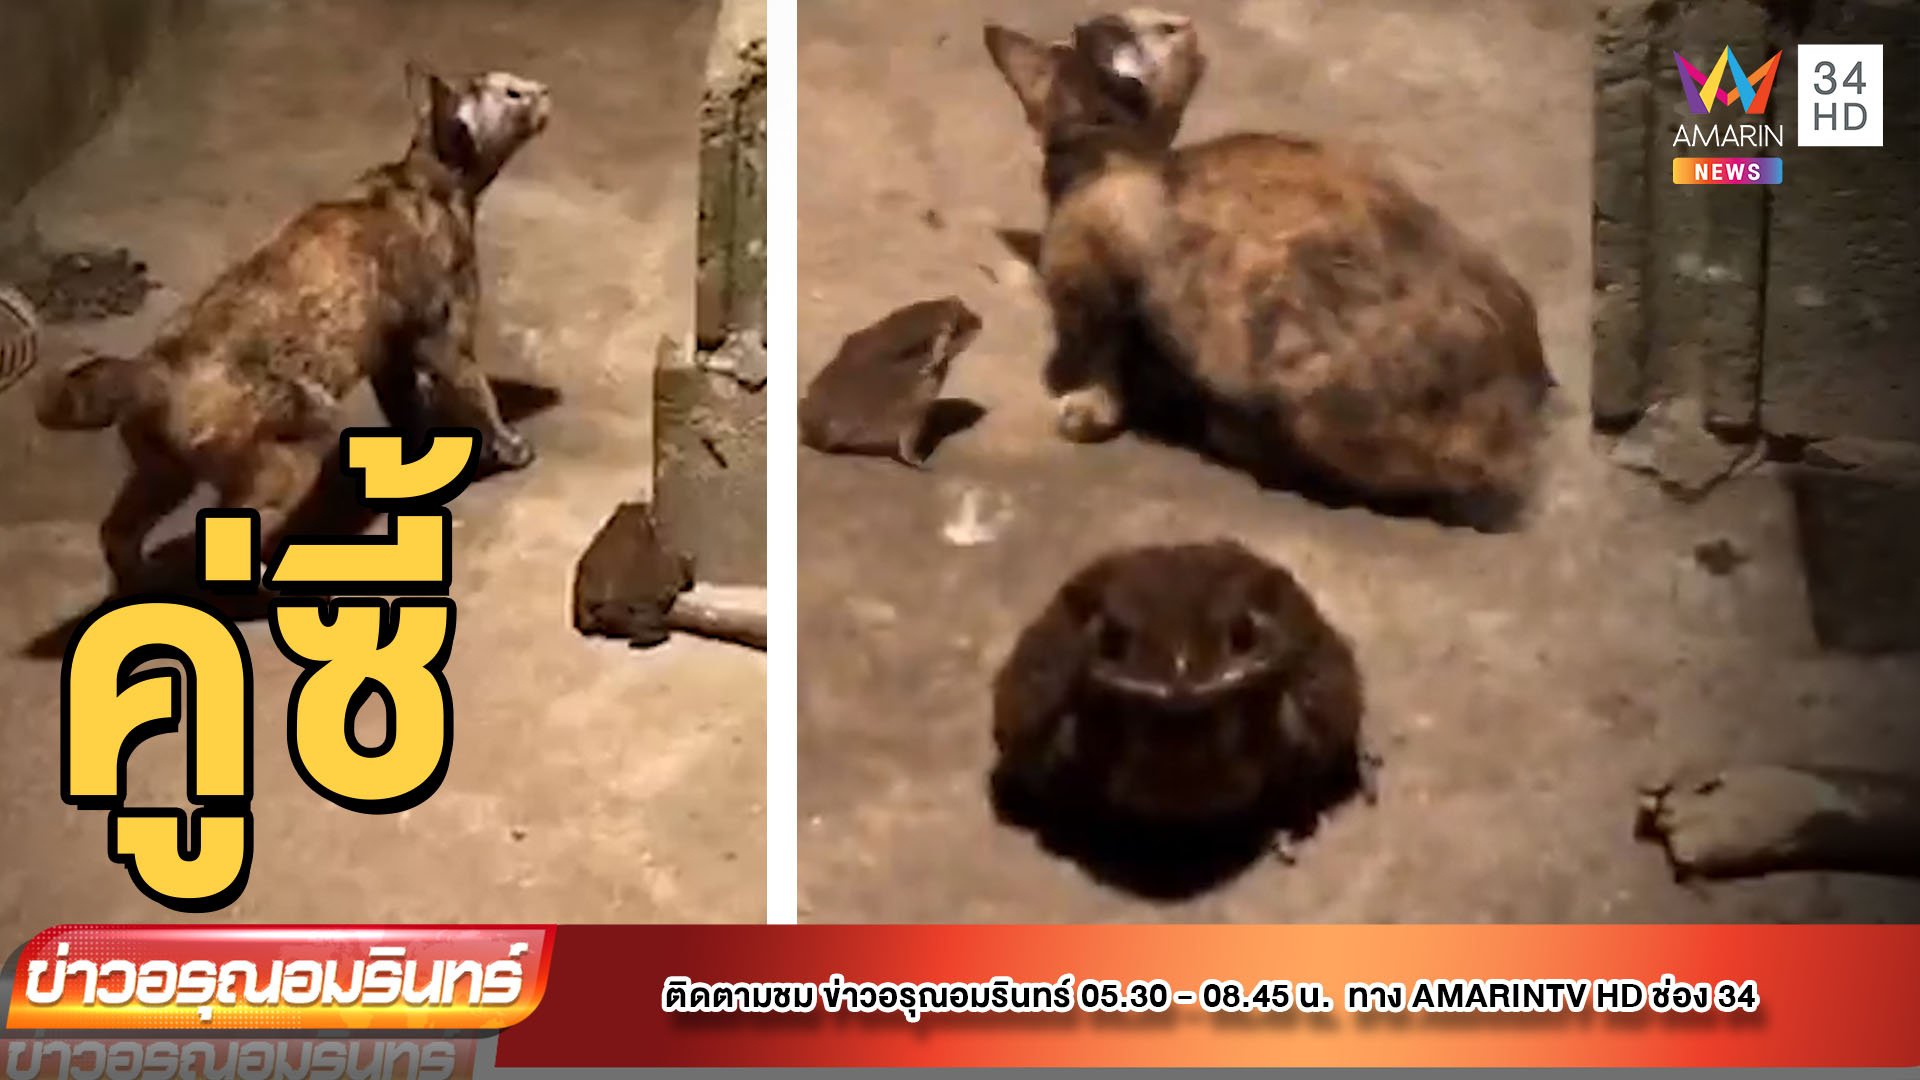 ทึ่ง “แมว-คางคก” เพื่อนรักต่างสายพันธุ์ | ข่าวอรุณอมรินทร์ | 24 มิ.ย. 65 | AMARIN TVHD34